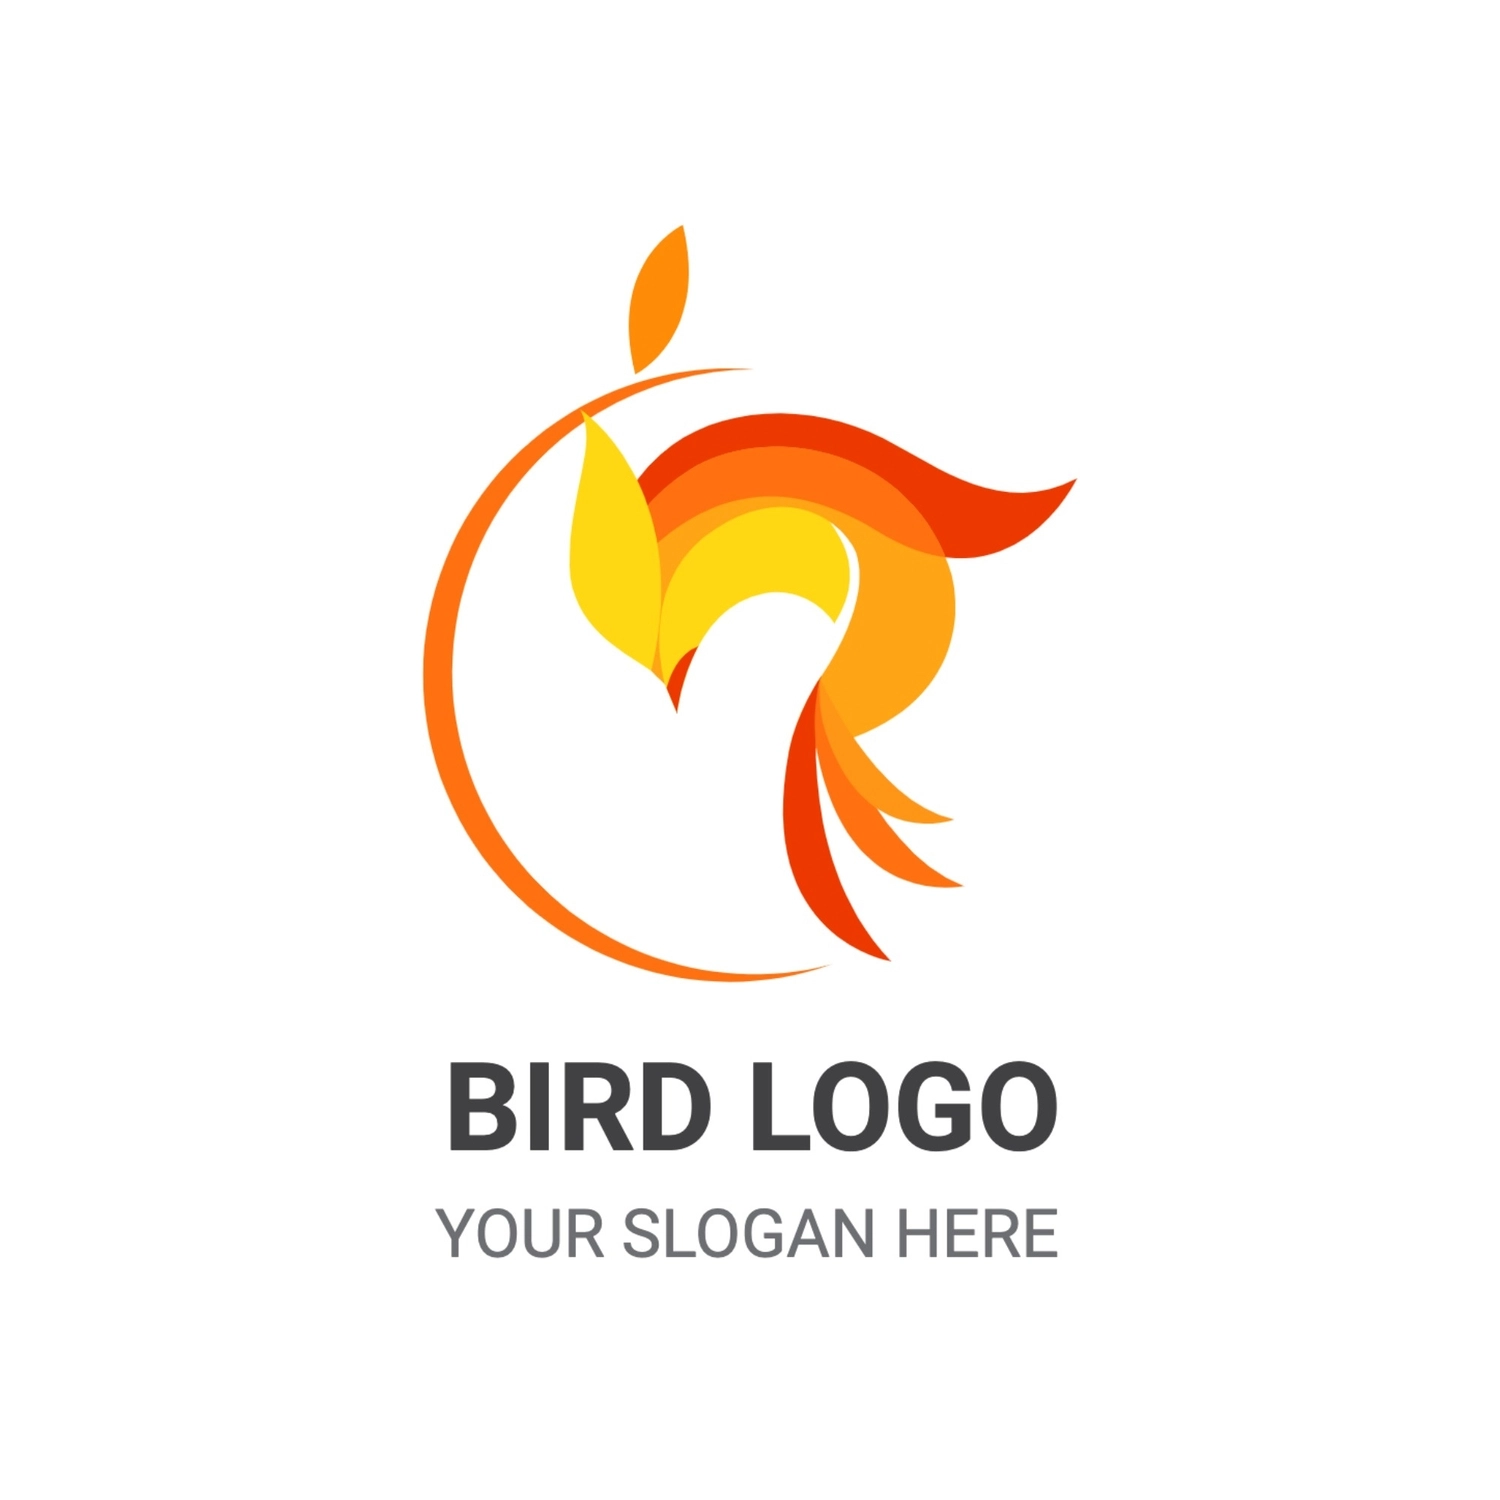 オレンジの鳥のロゴ, 插圖, 創造, 設計, 商標 模板